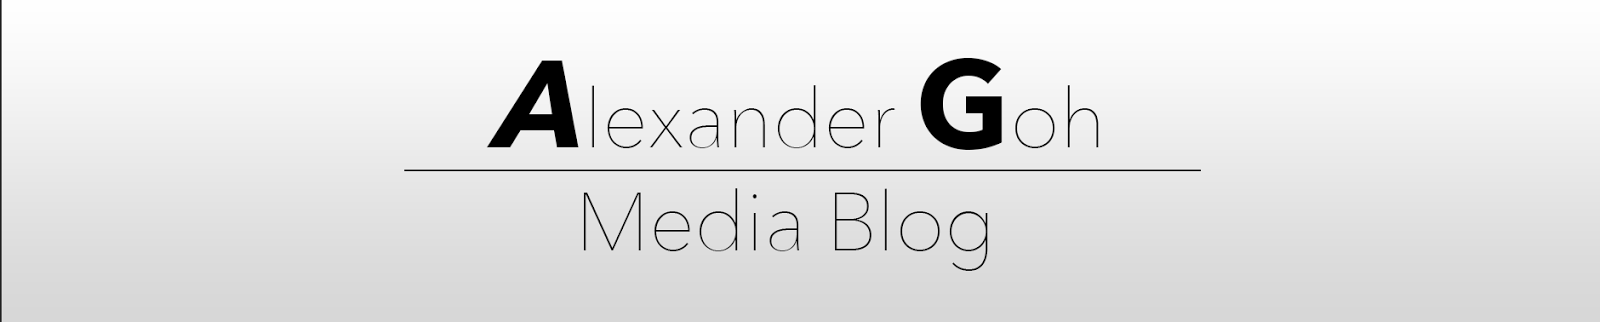 Alexander Media Blog